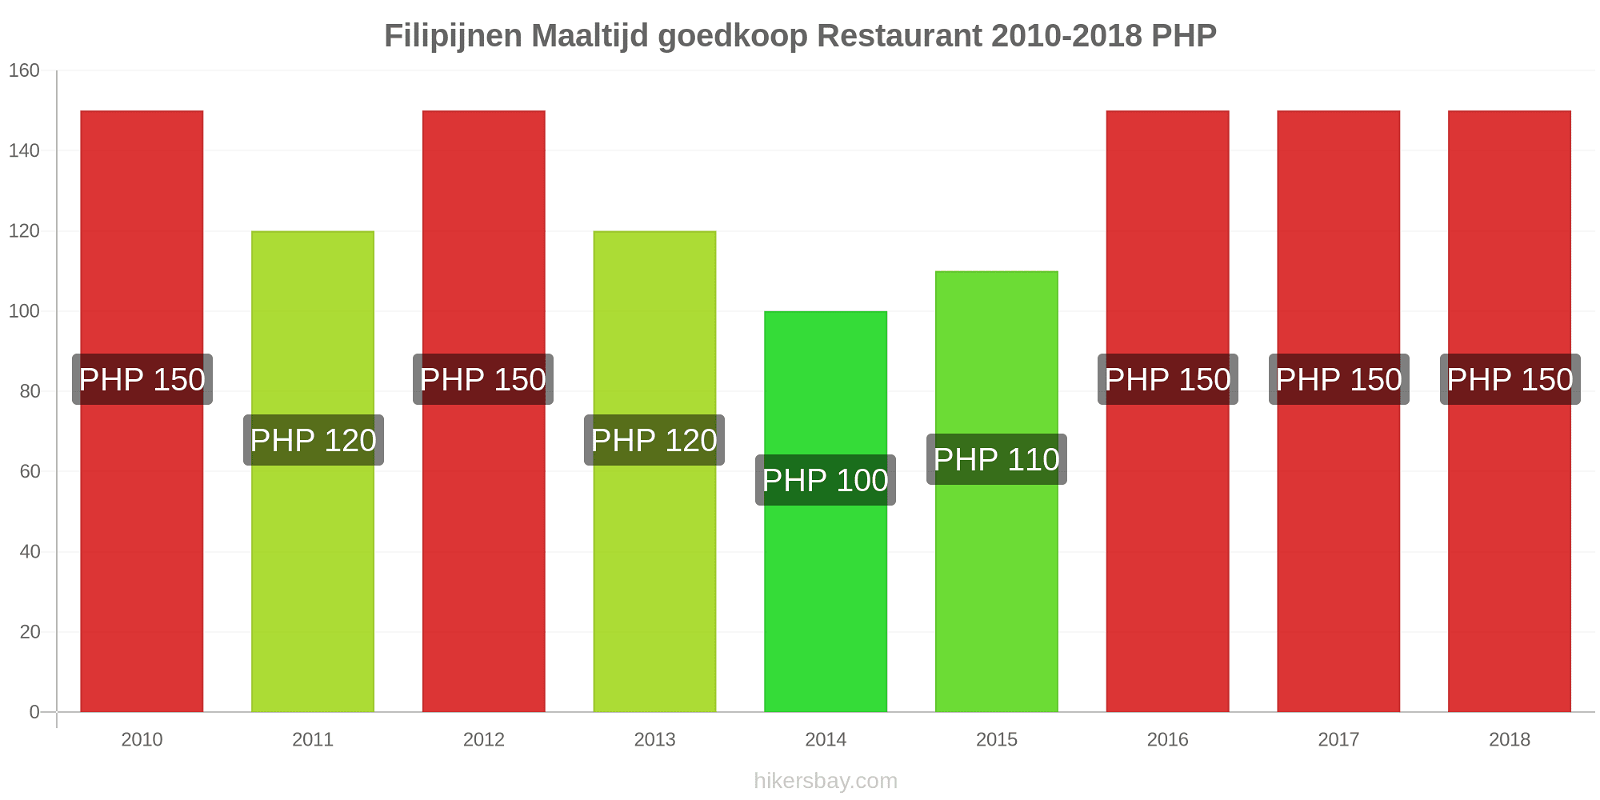 Filipijnen prijswijzigingen Maaltijd in een goedkoop restaurant hikersbay.com